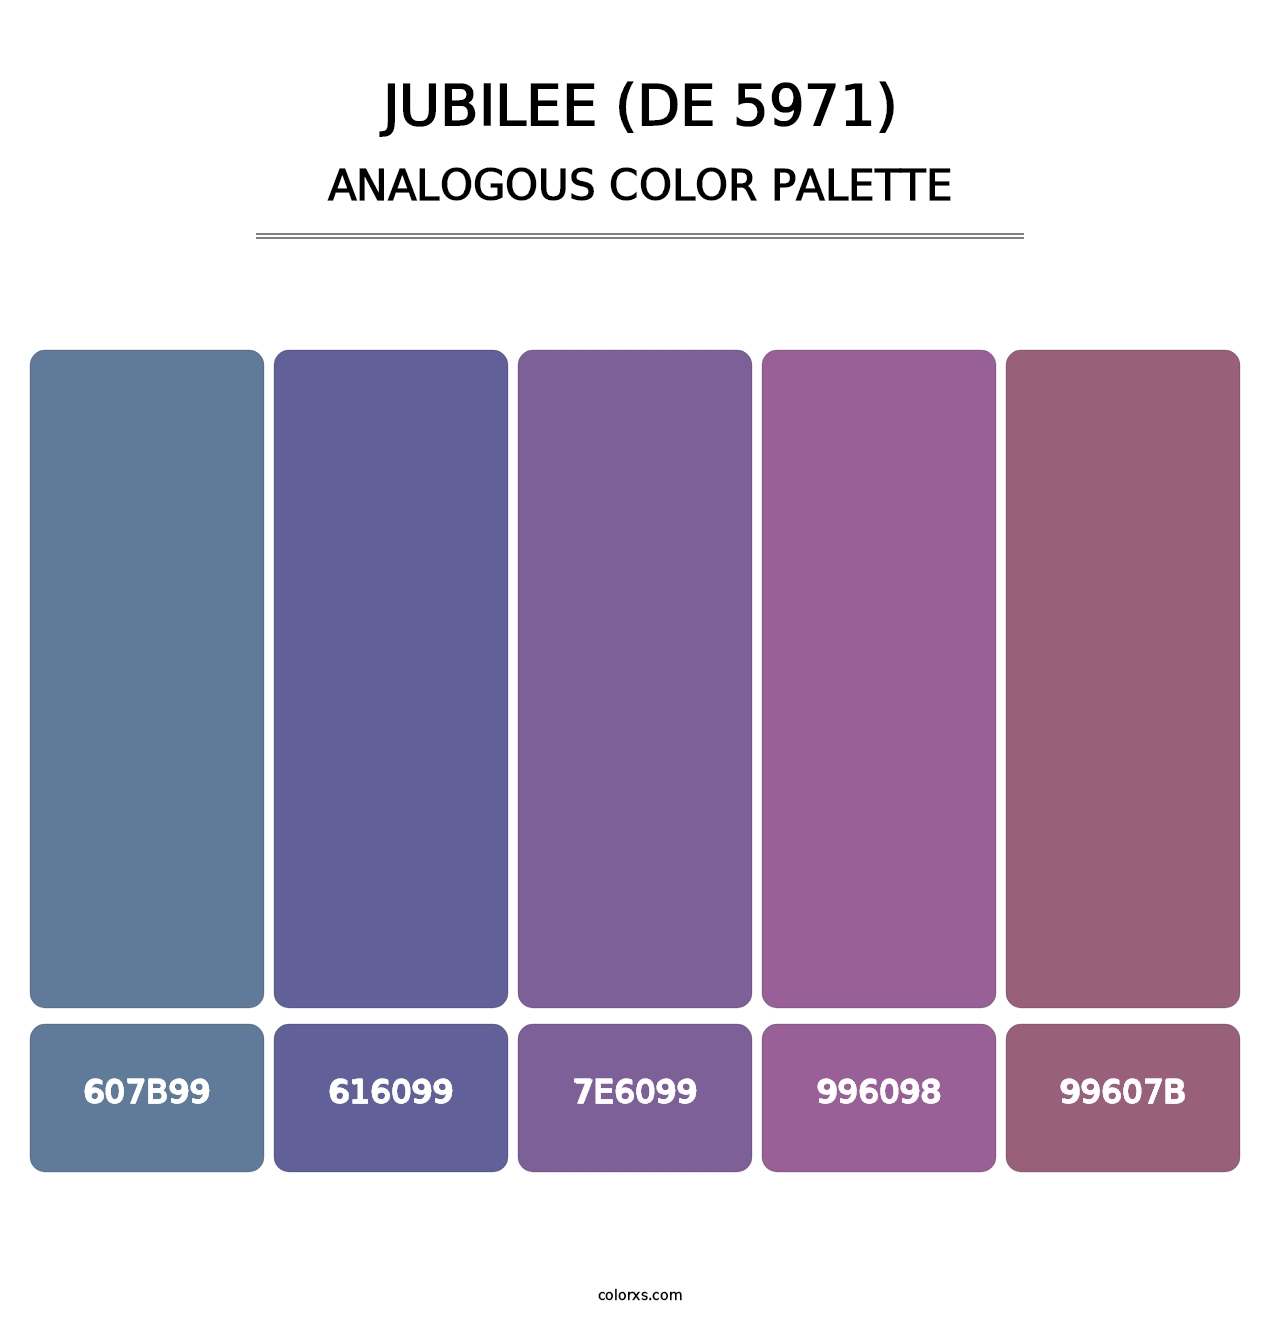 Jubilee (DE 5971) - Analogous Color Palette